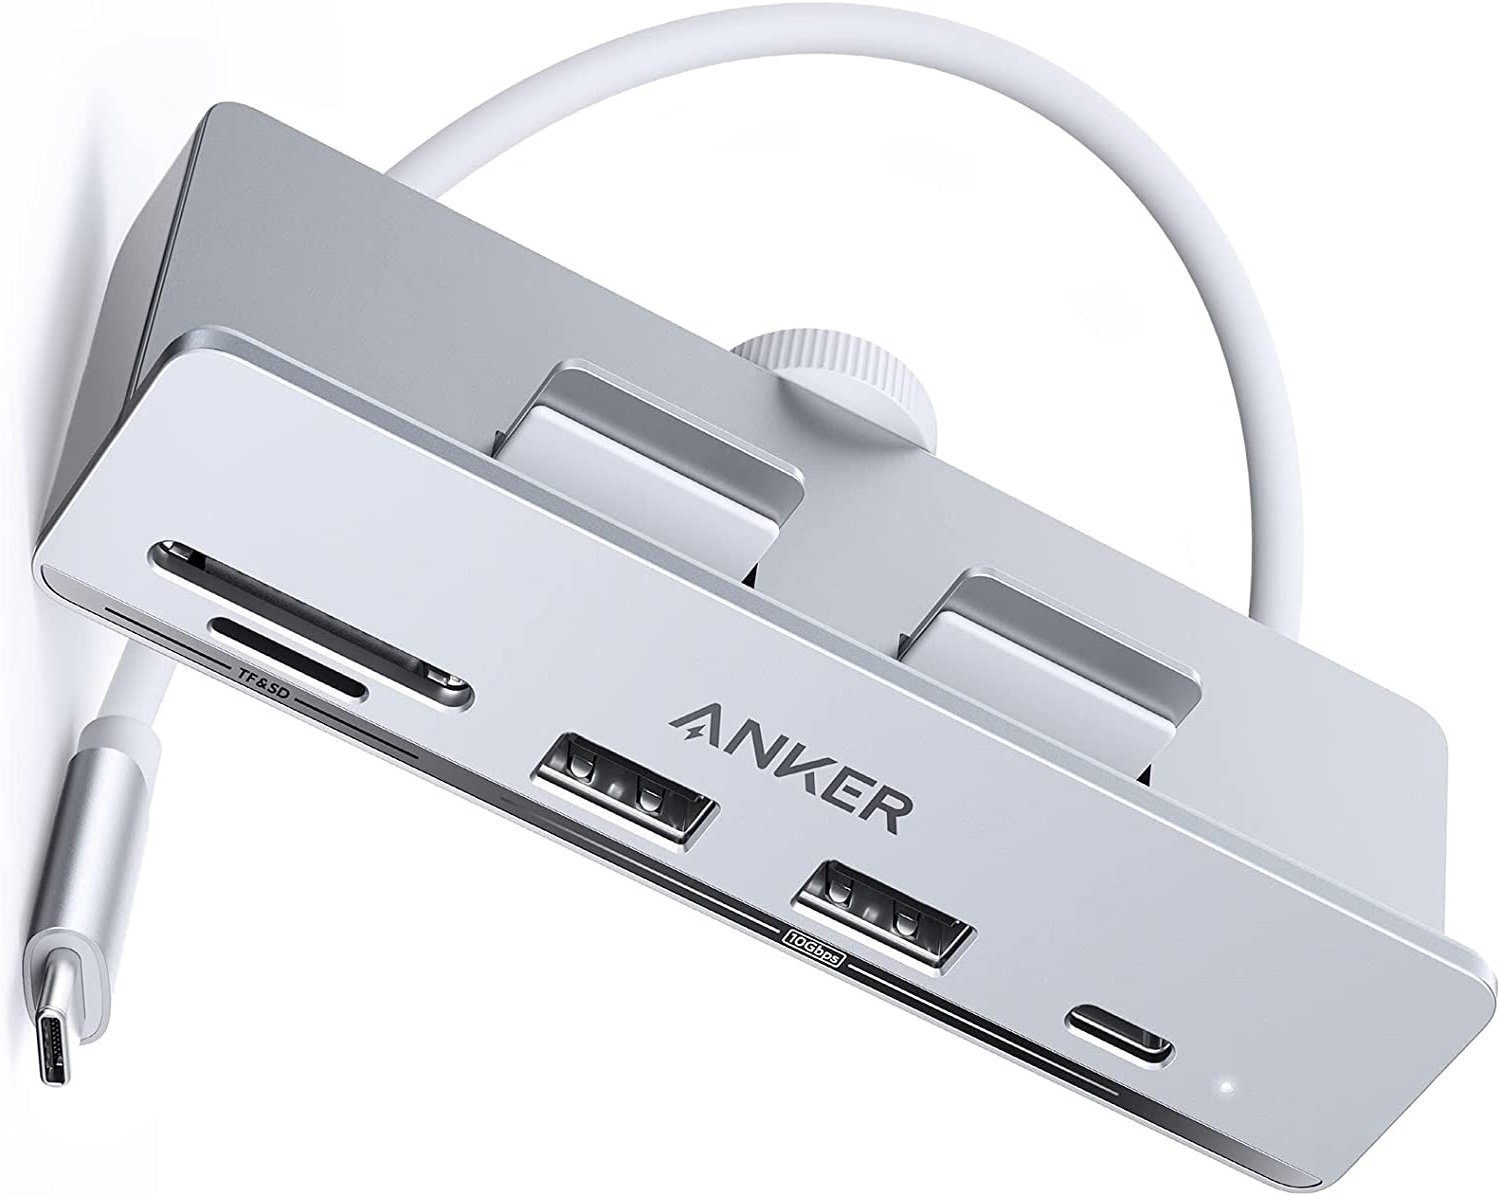 アンカー、iMac向けクランプ式USB-Cハブを販売開始 - ITmedia NEWS